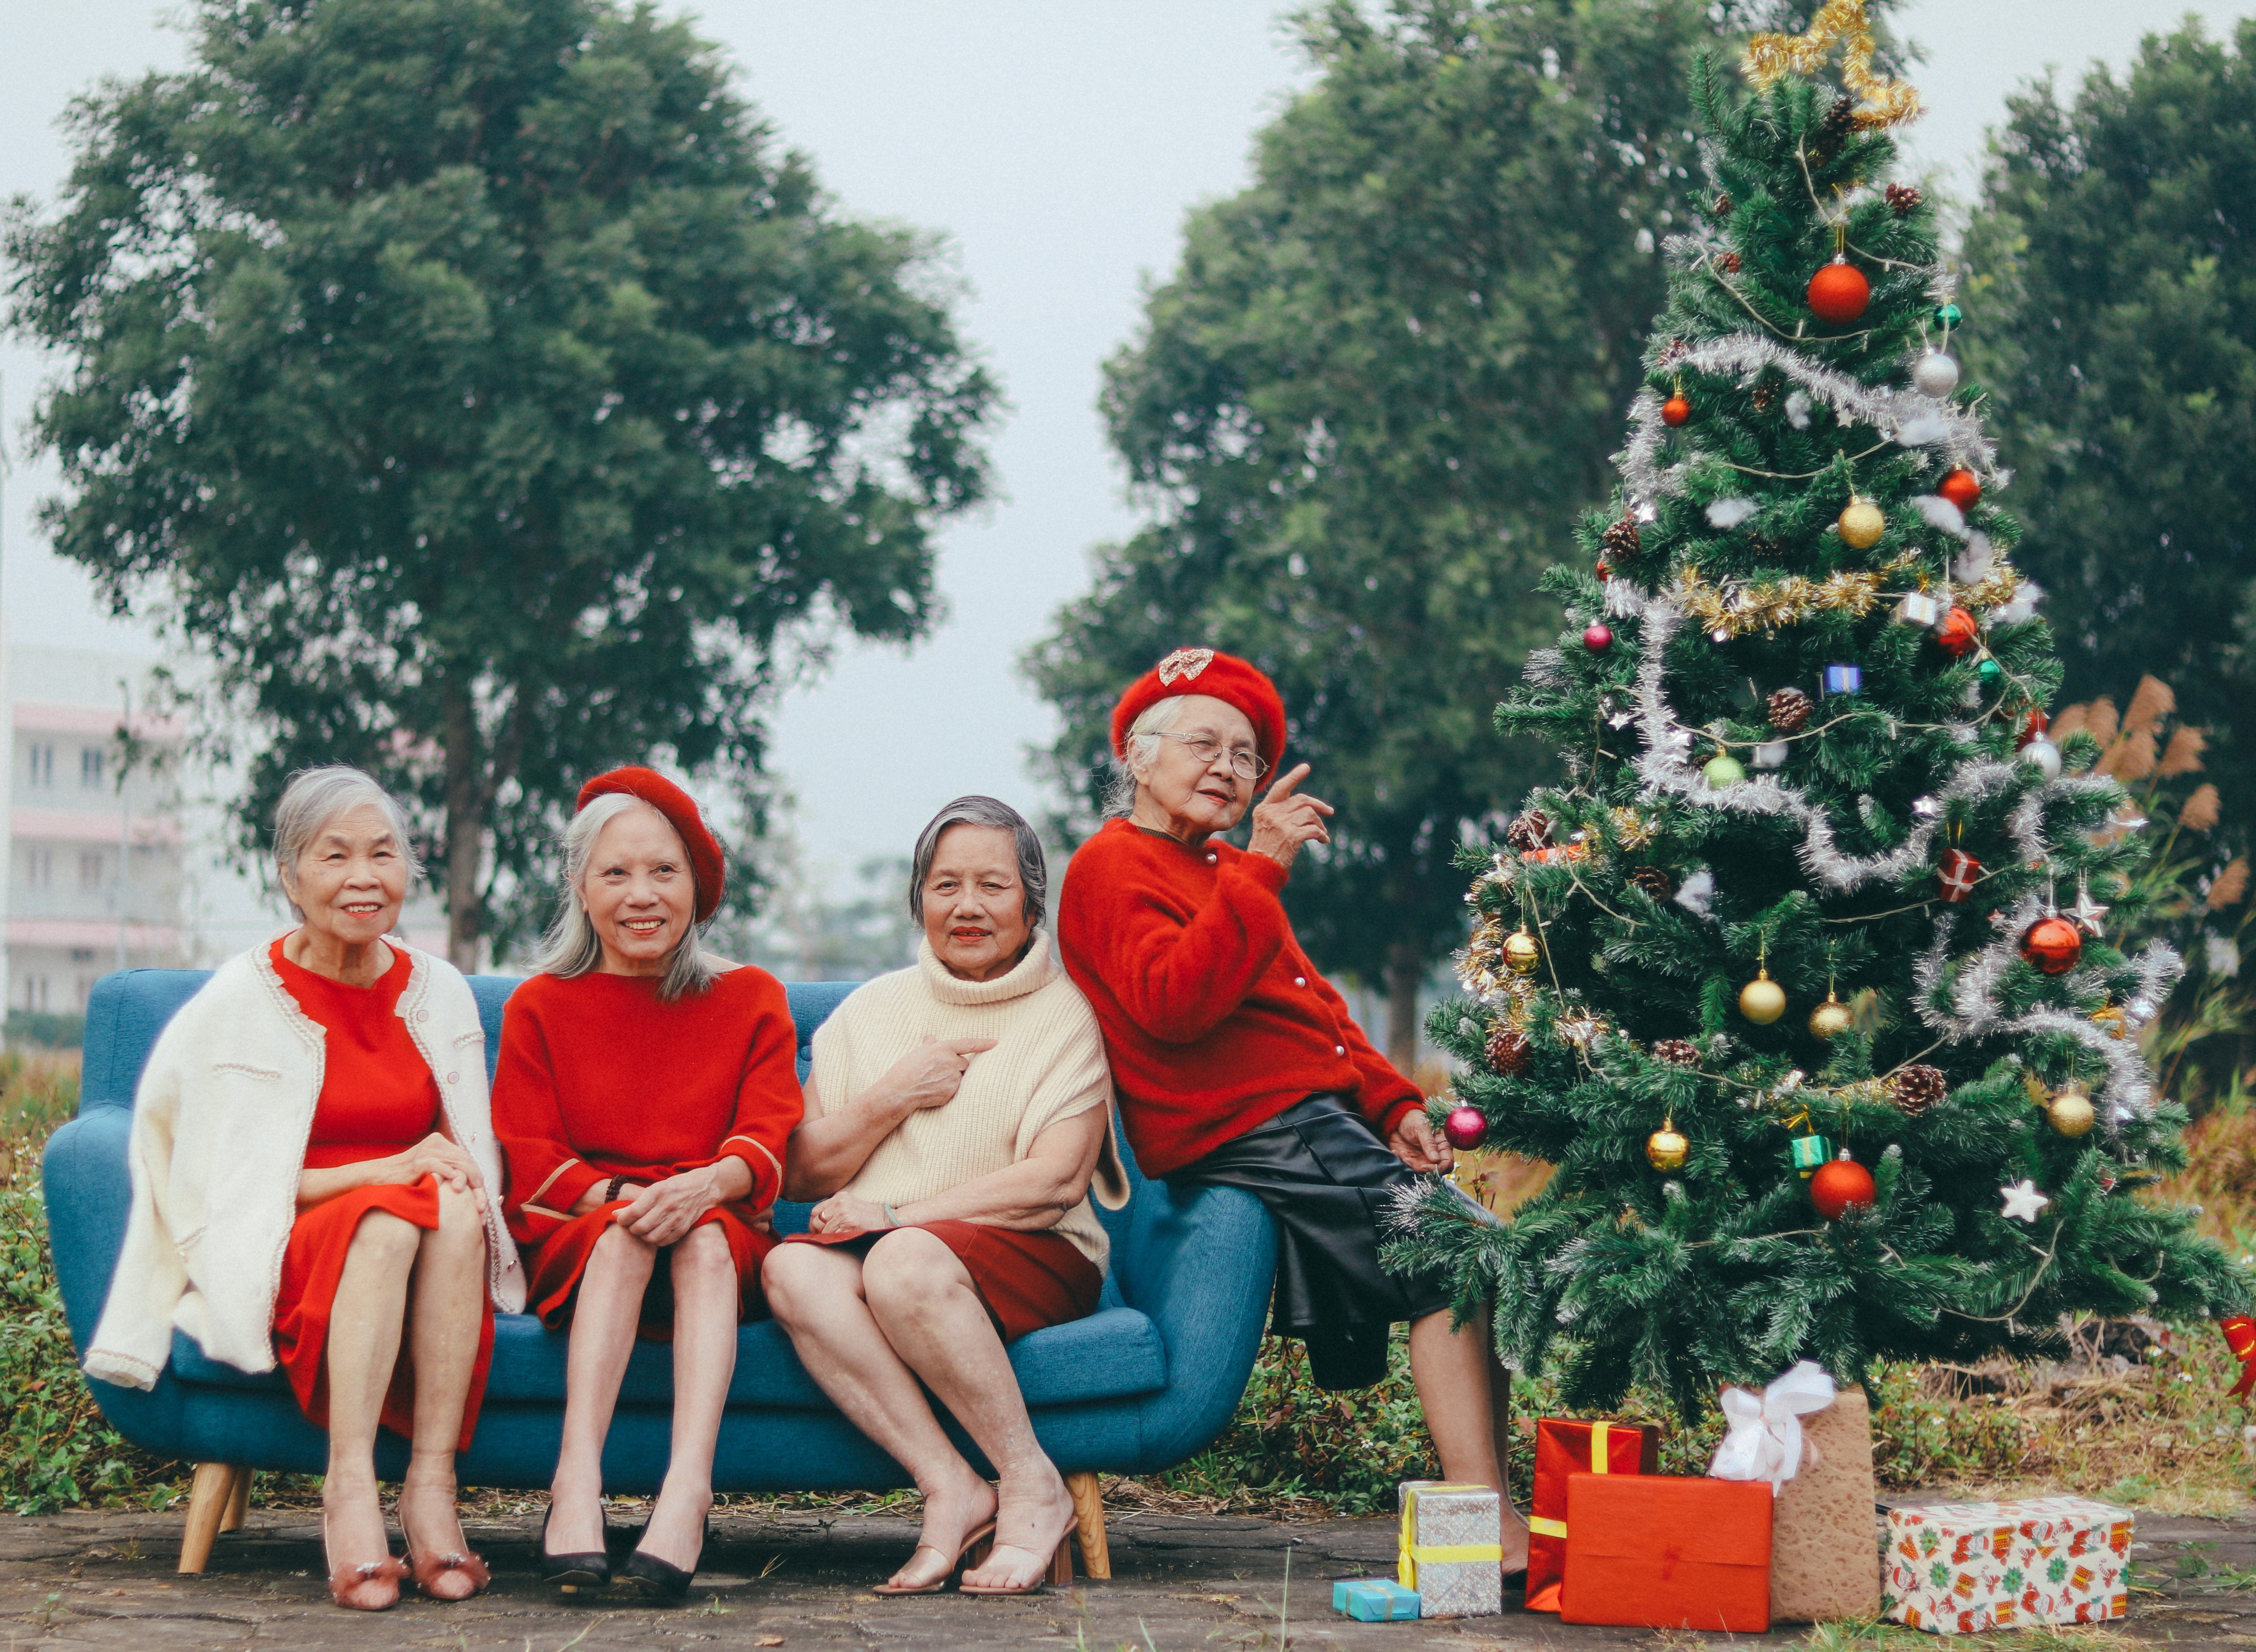 Bộ ảnh U90, giáng sinh Hà Nội sẽ đưa bạn đến với không khí Noel tràn đầy năm tháng và cảm nhận được sự âm thầm của những người đàn ông, phụ nữ đã trải qua bao thăng trầm vẫn muốn trải nghiệm và cùng nhau chuẩn bị cho một mùa lễ hội tuyệt vời.